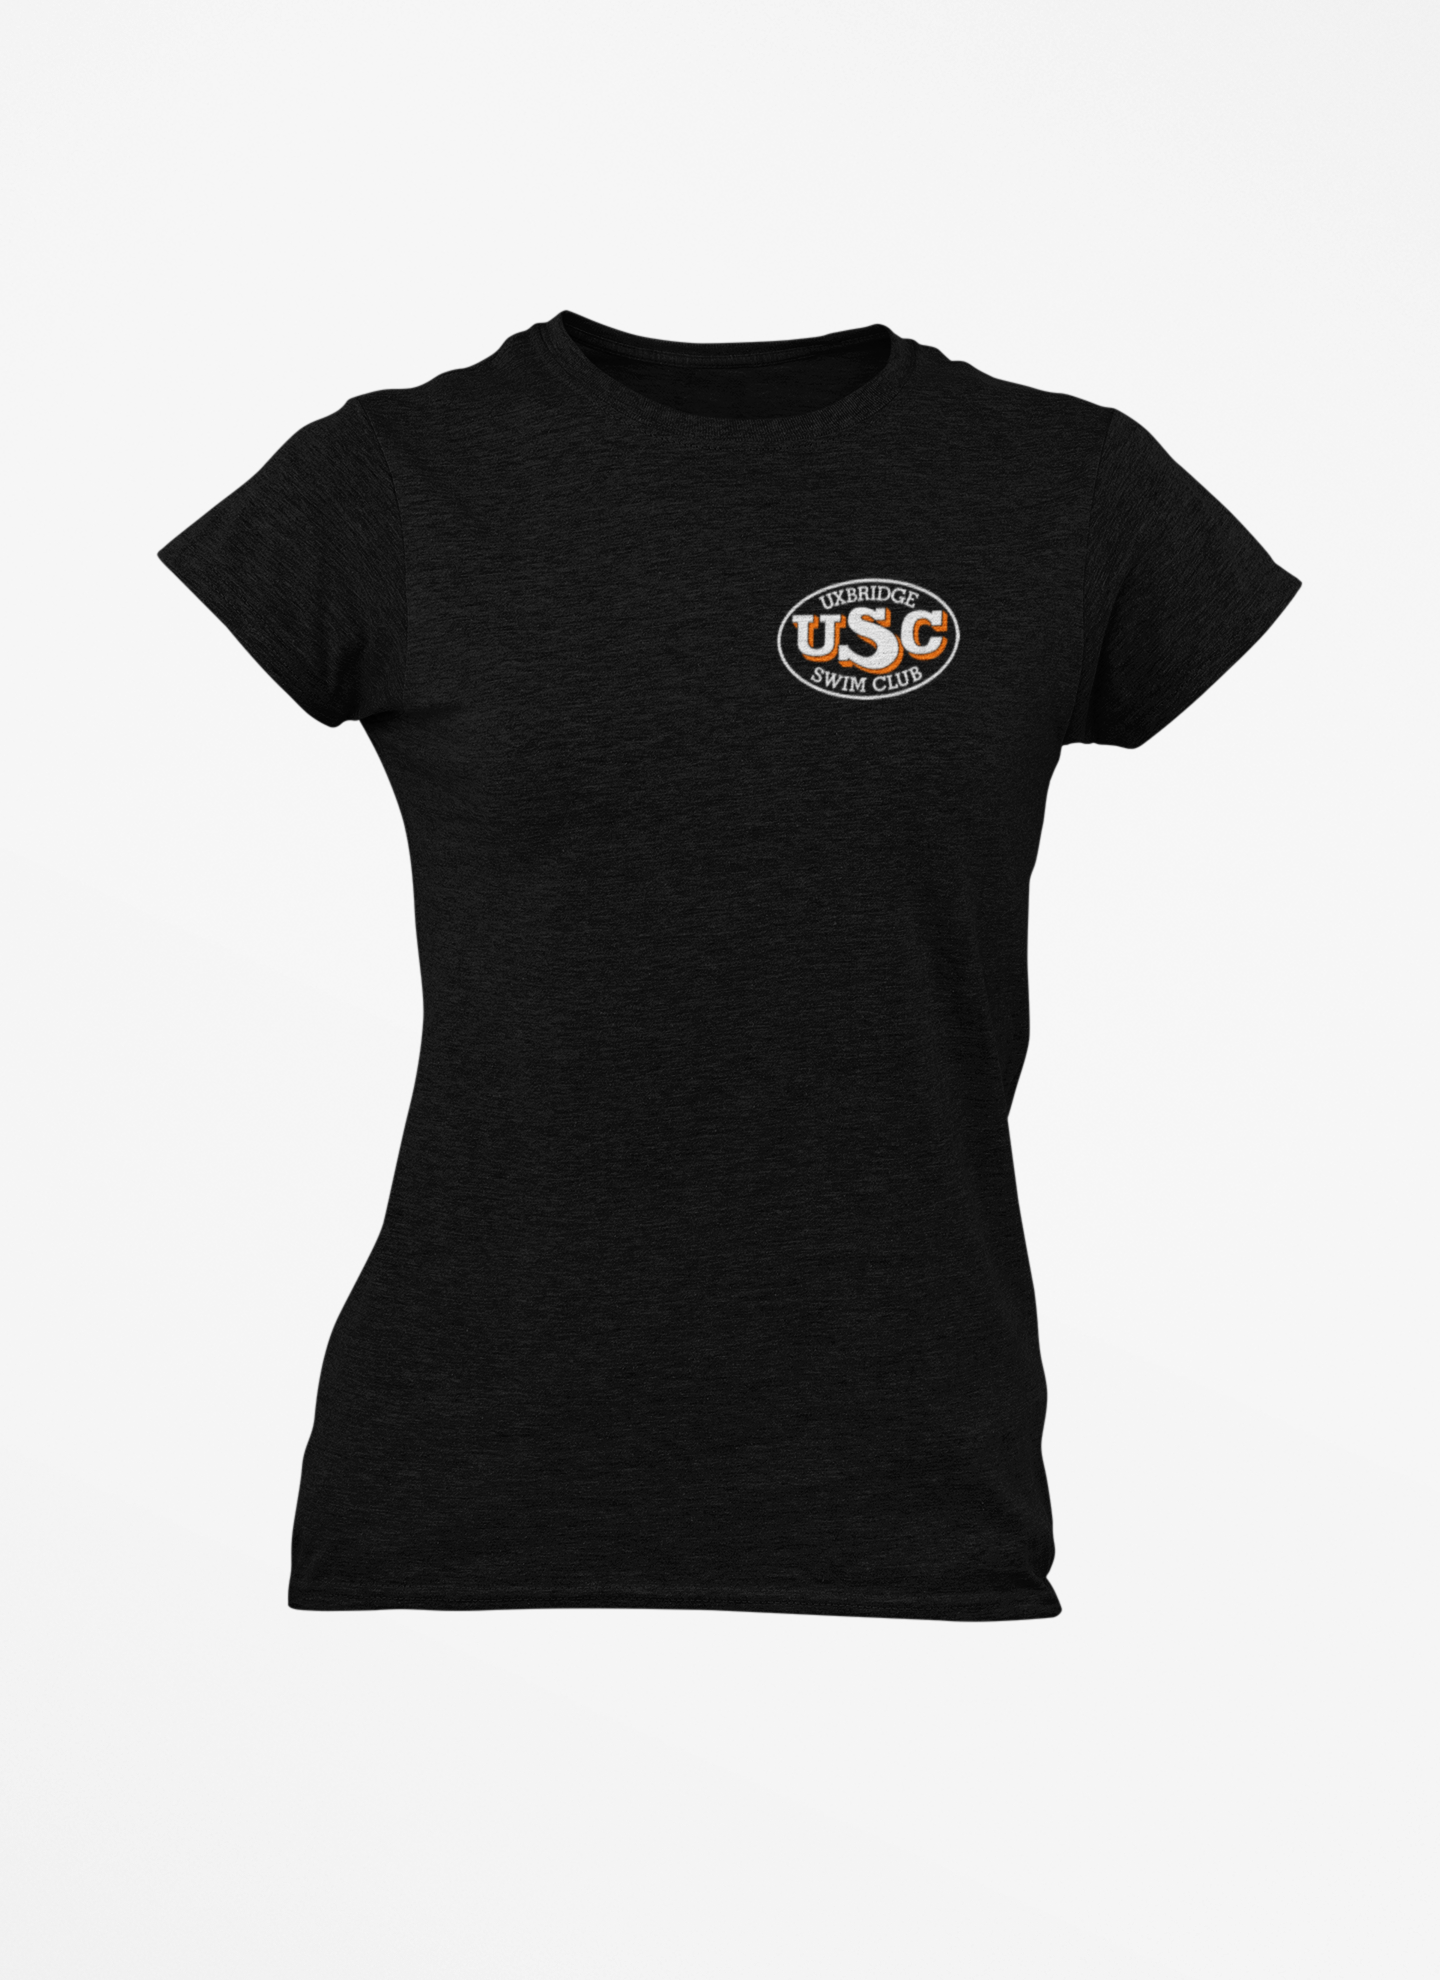 Uxbridge Swim Club Women's T-shirt - Best Things